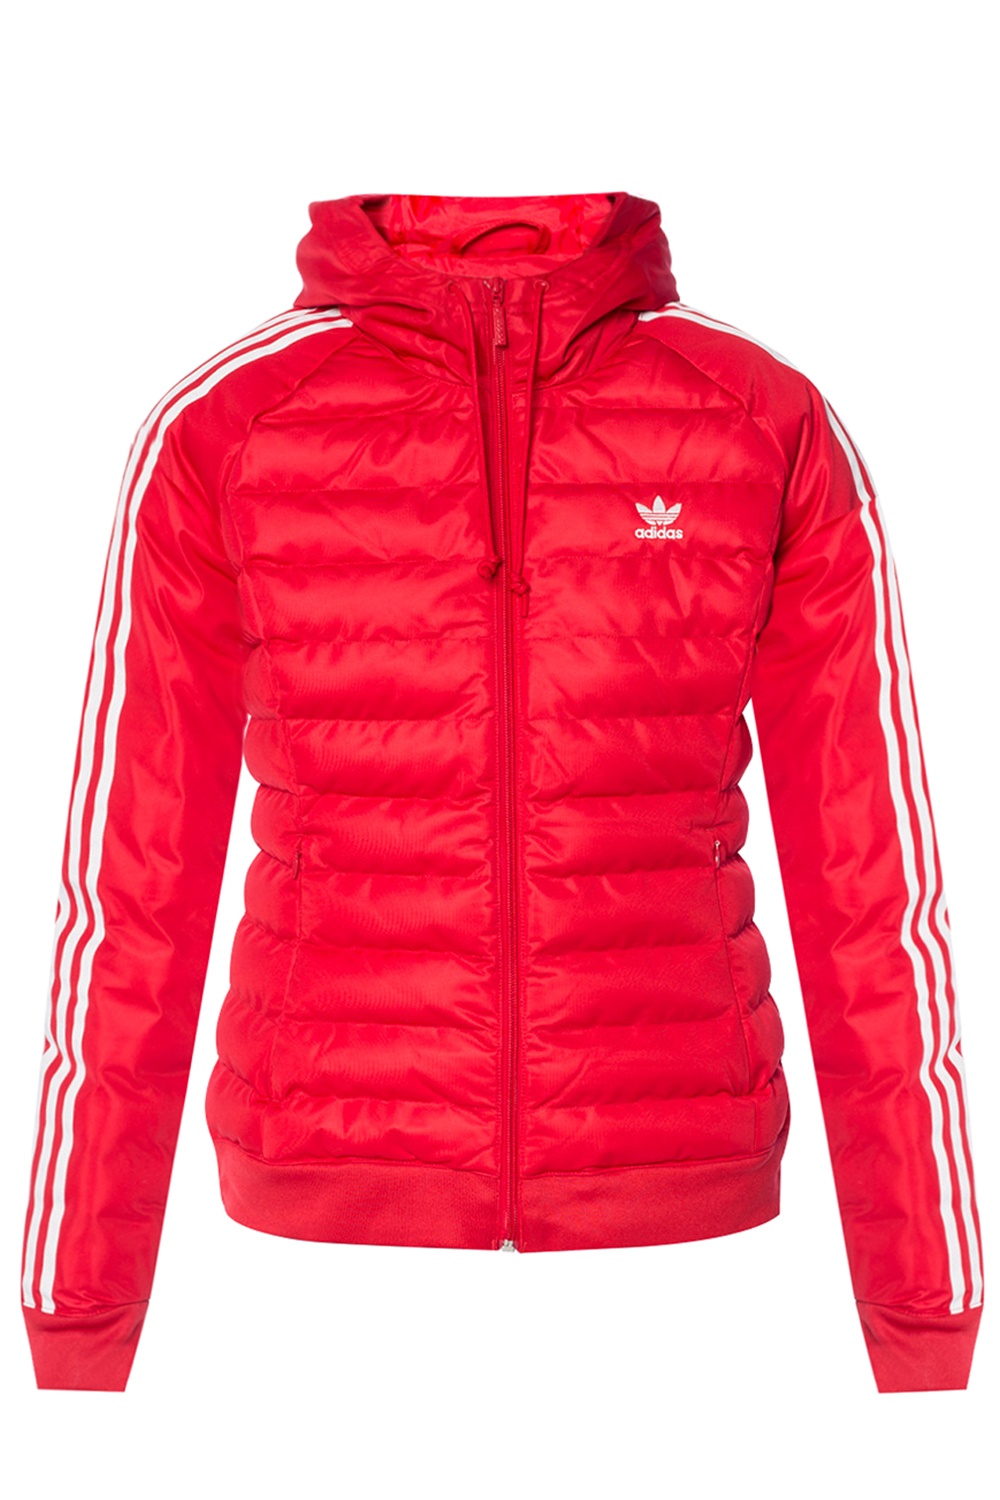 Adidas gp1822 куртка красная